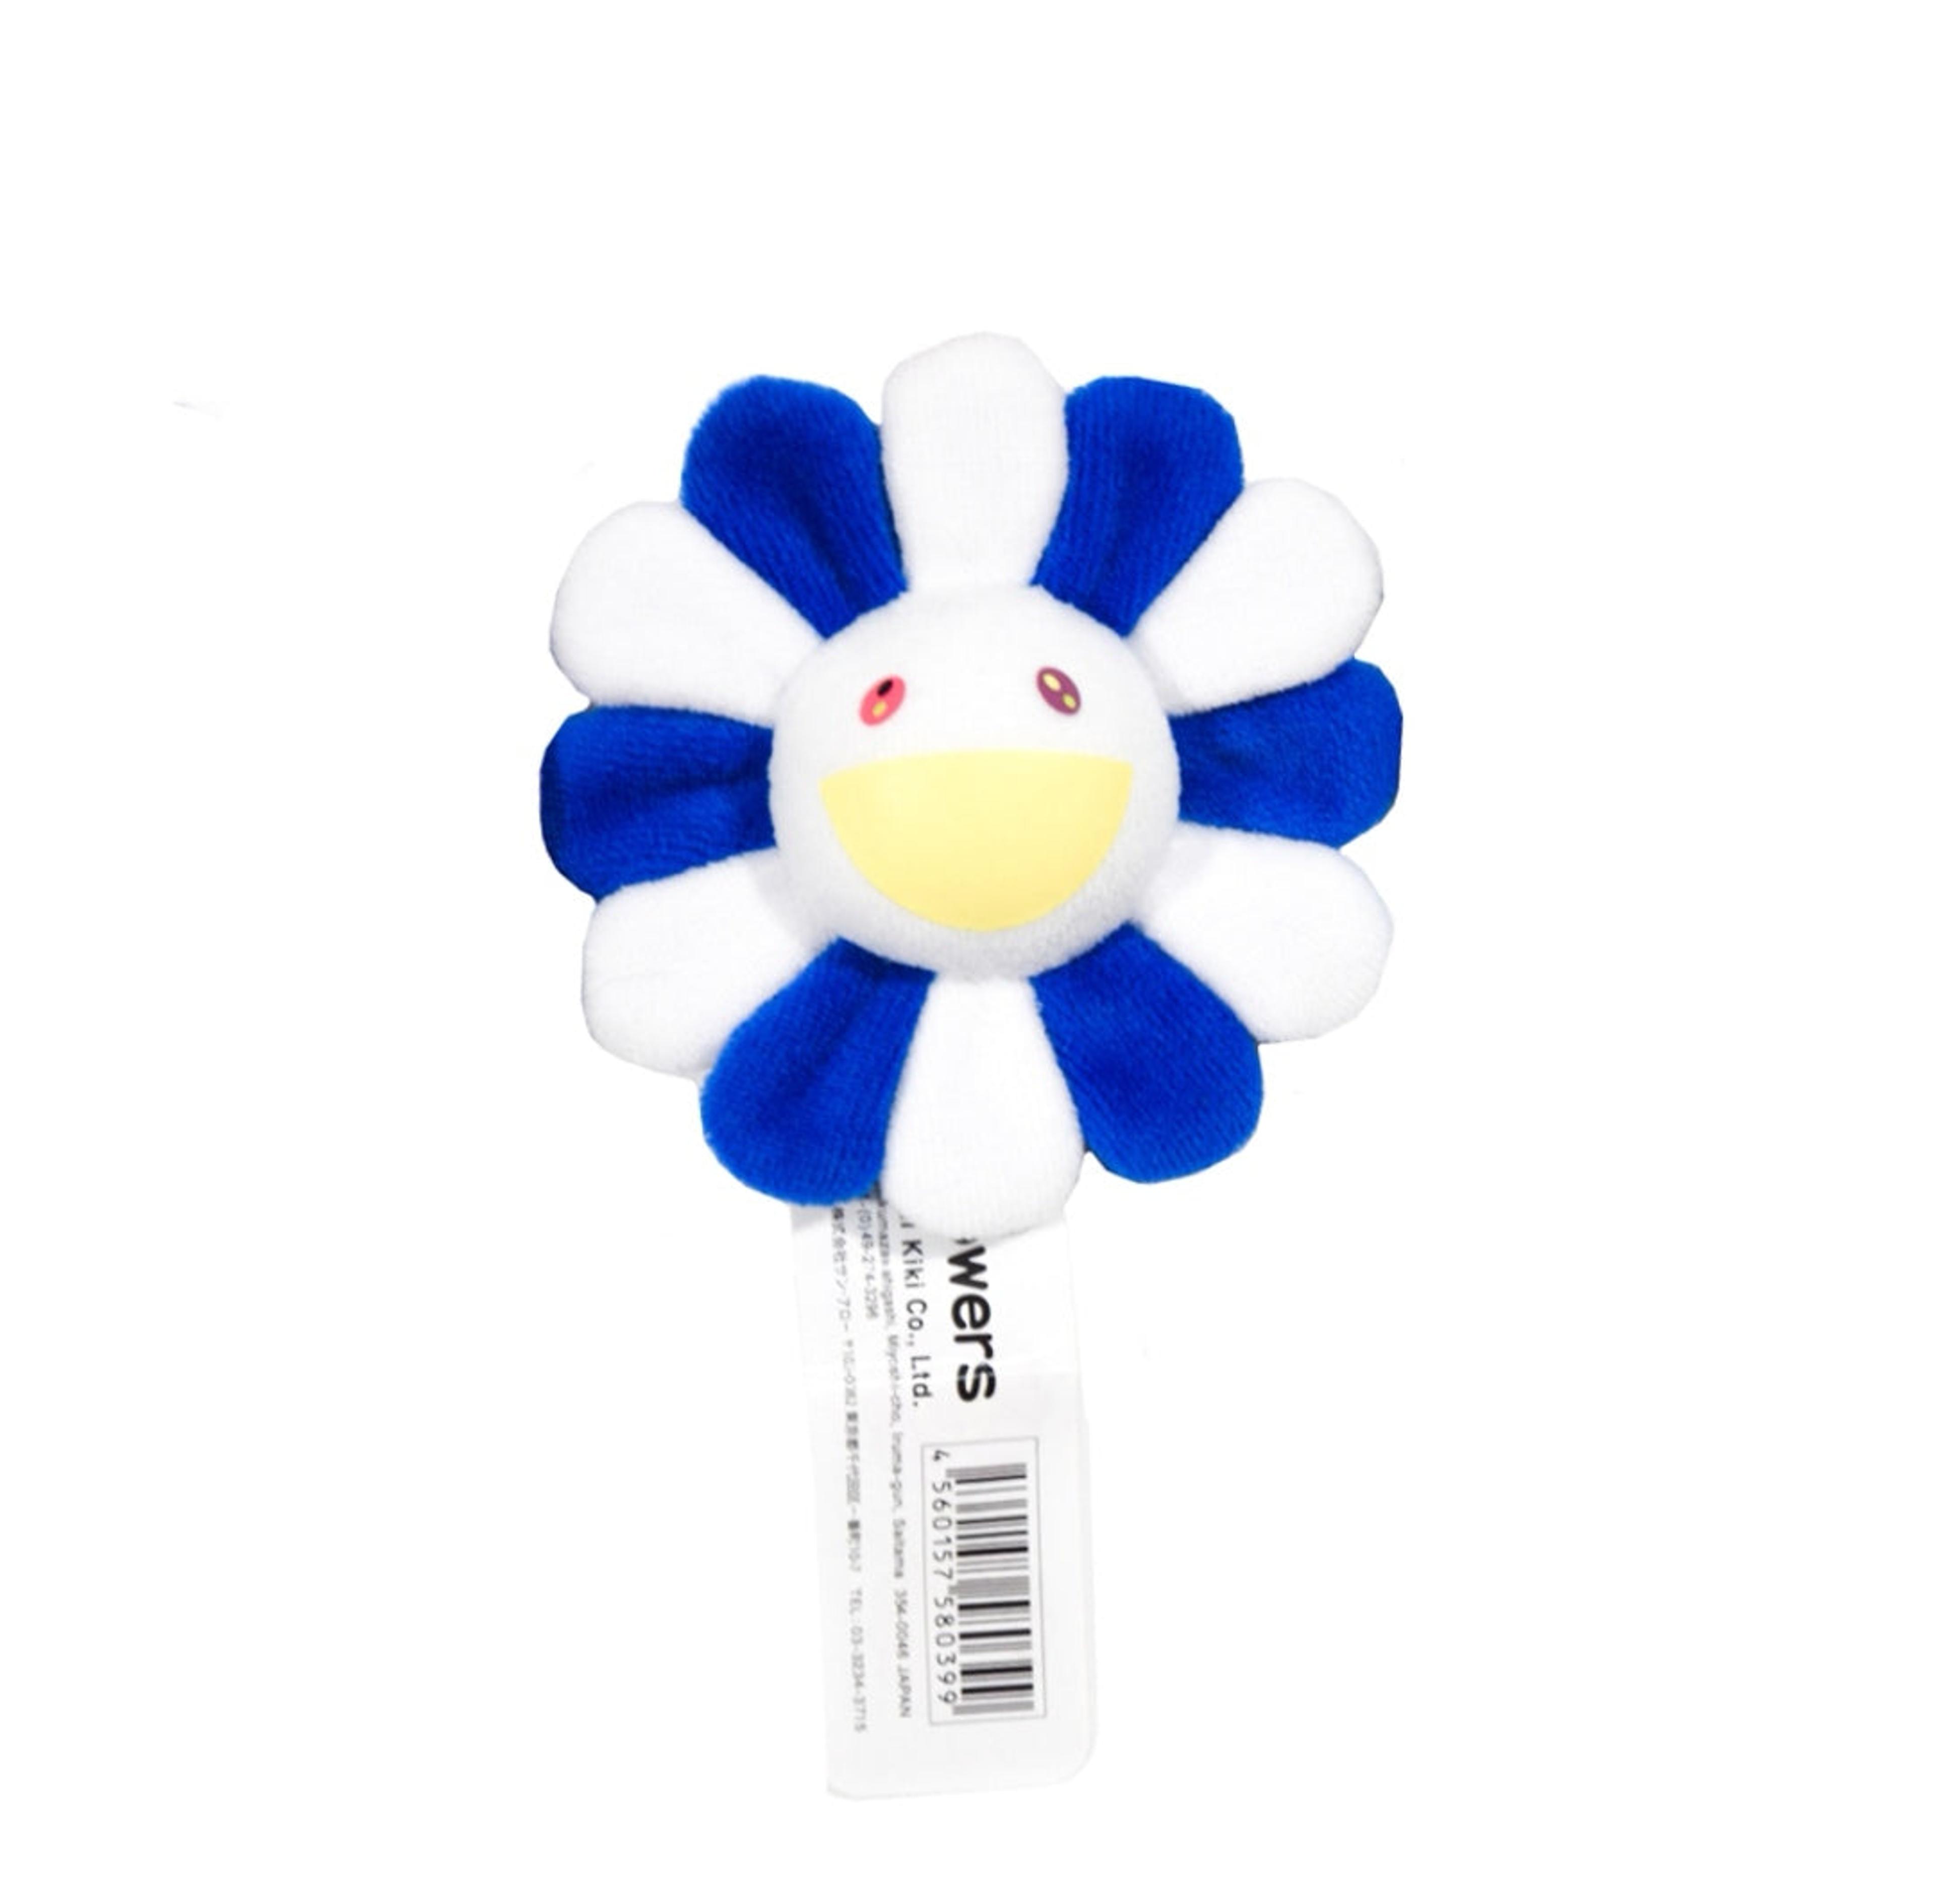 Alternate View 16 of Takashi Murakami Flower Plush Pin 8cm